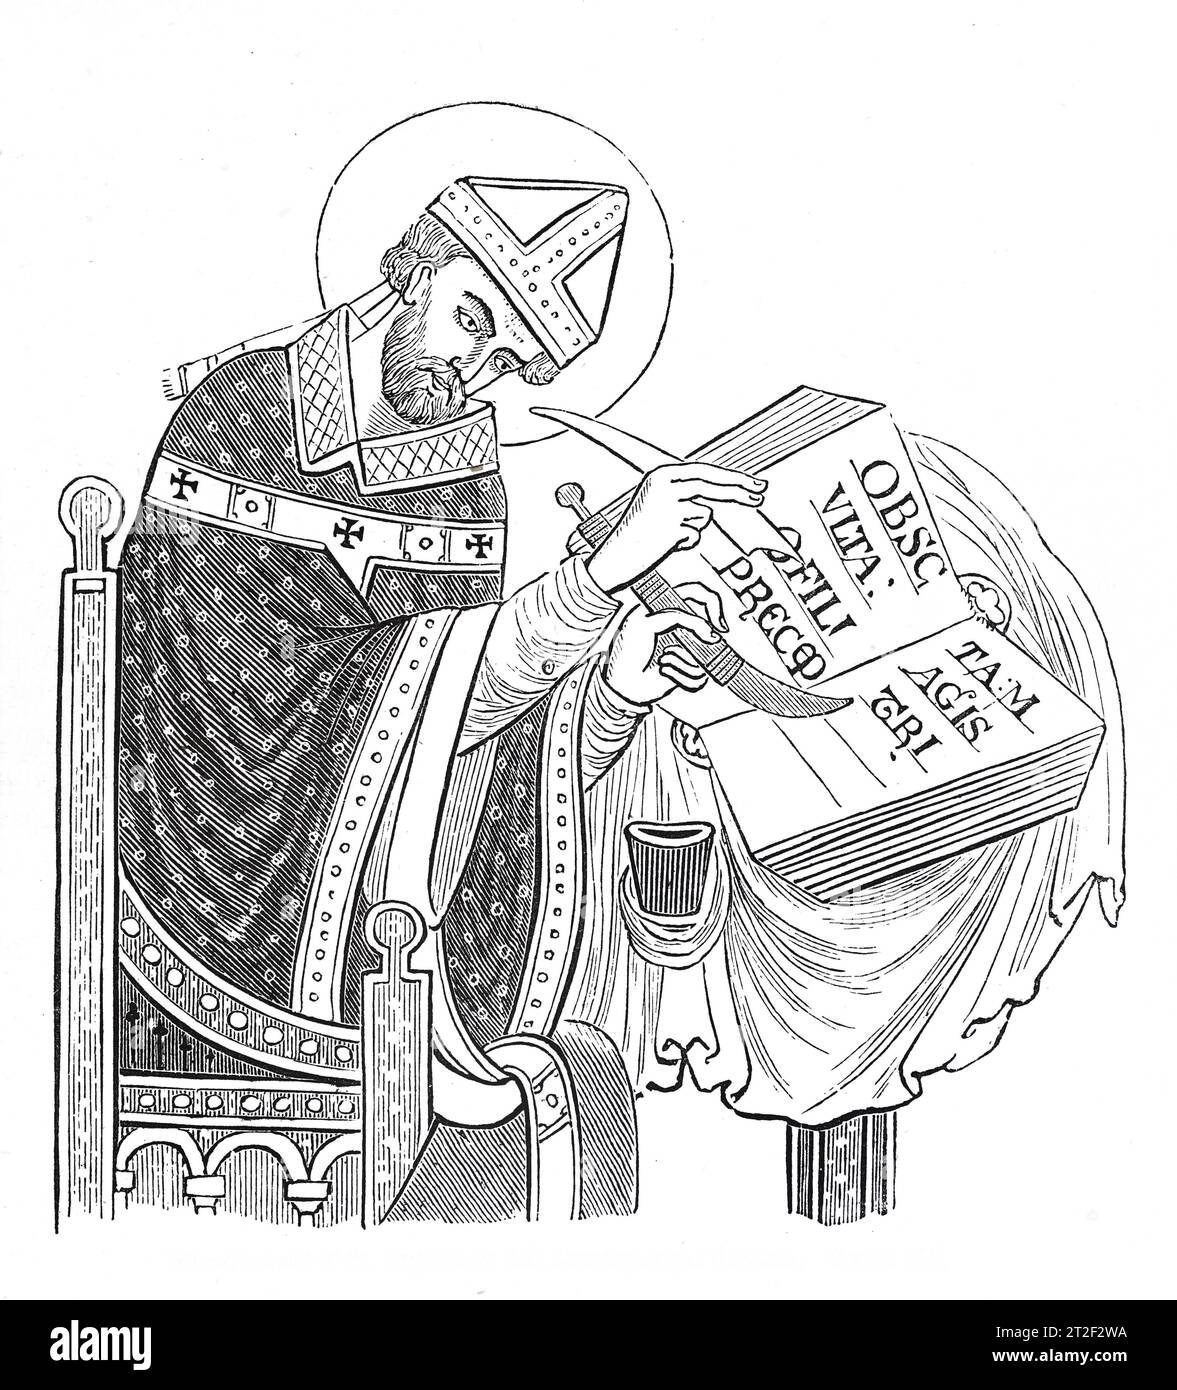 St Dunstan, Arcivescovo di Canterbury, illustrazione in bianco e nero del X secolo dell'Old England pubblicata da James Sangster nel 1860. Foto Stock